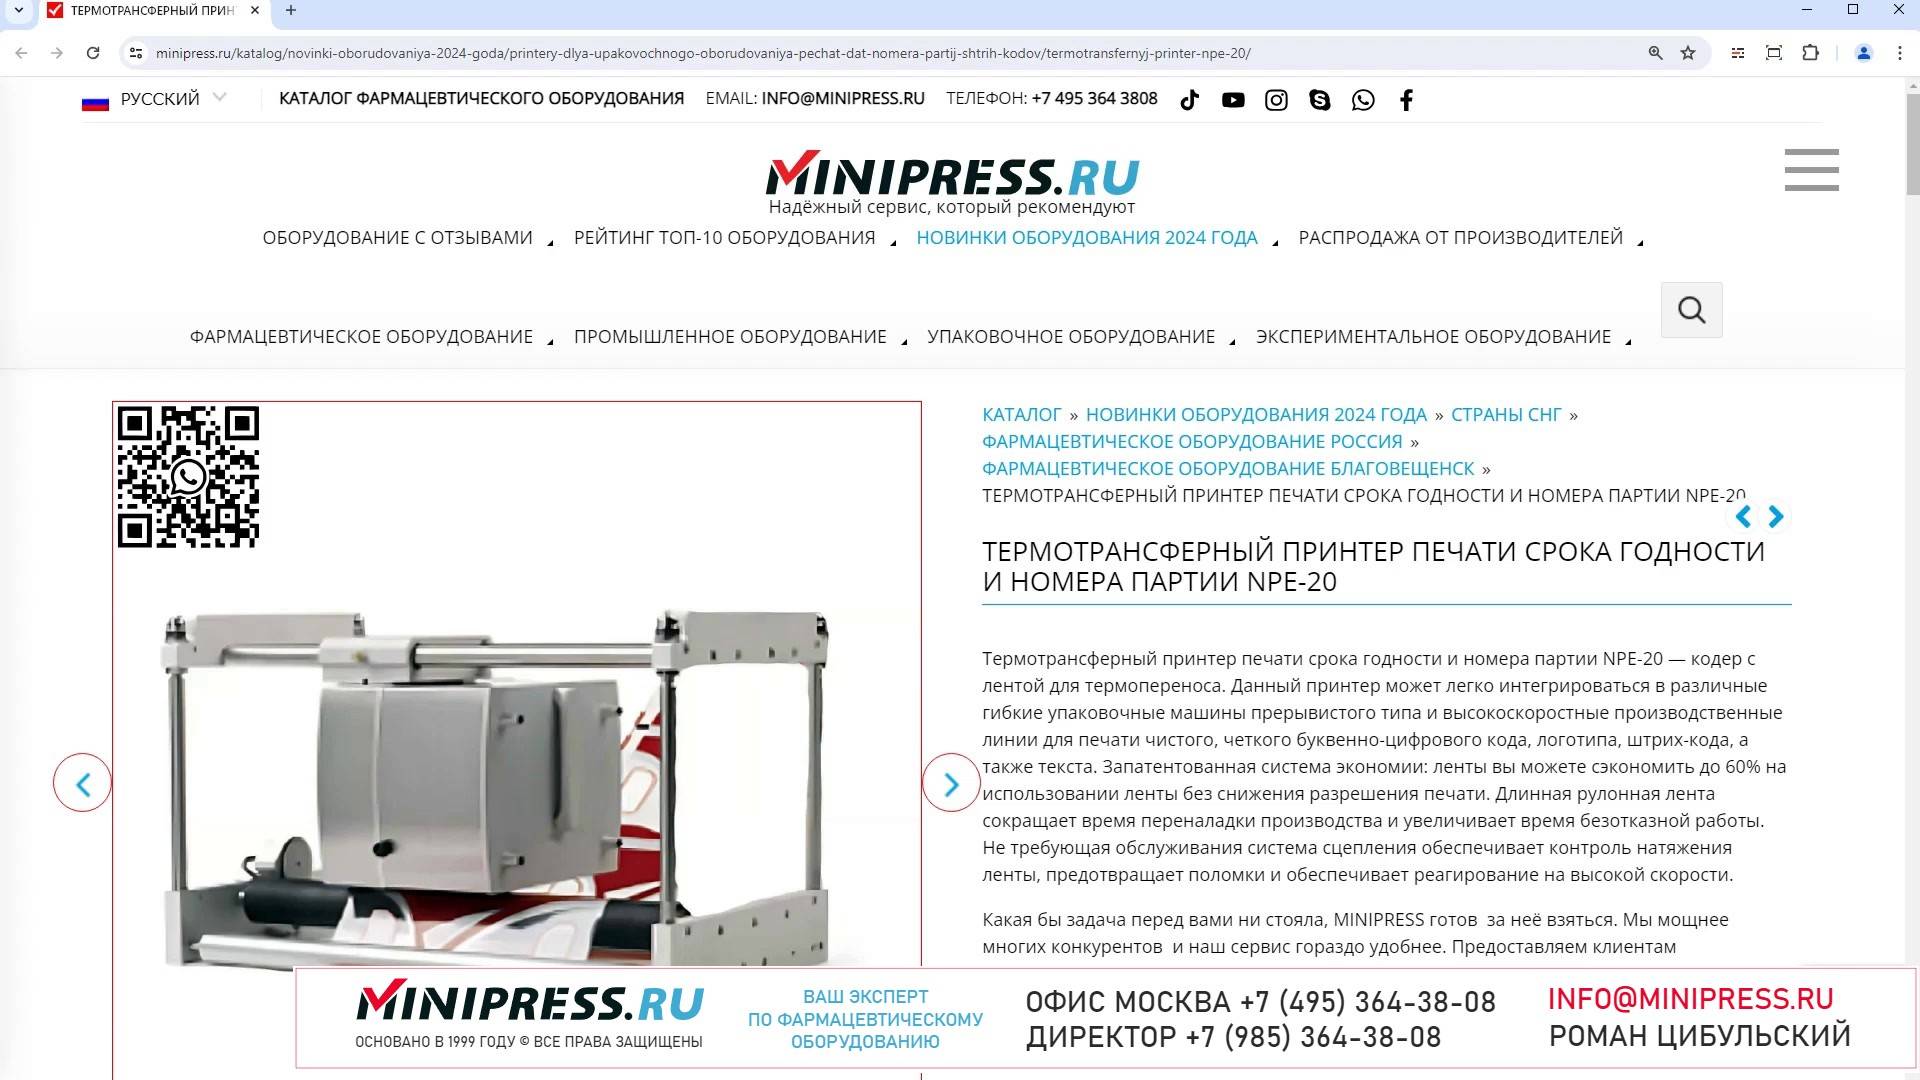 Minipress.ru Термотрансферный принтер печати срока годности и номера партии NPE-20